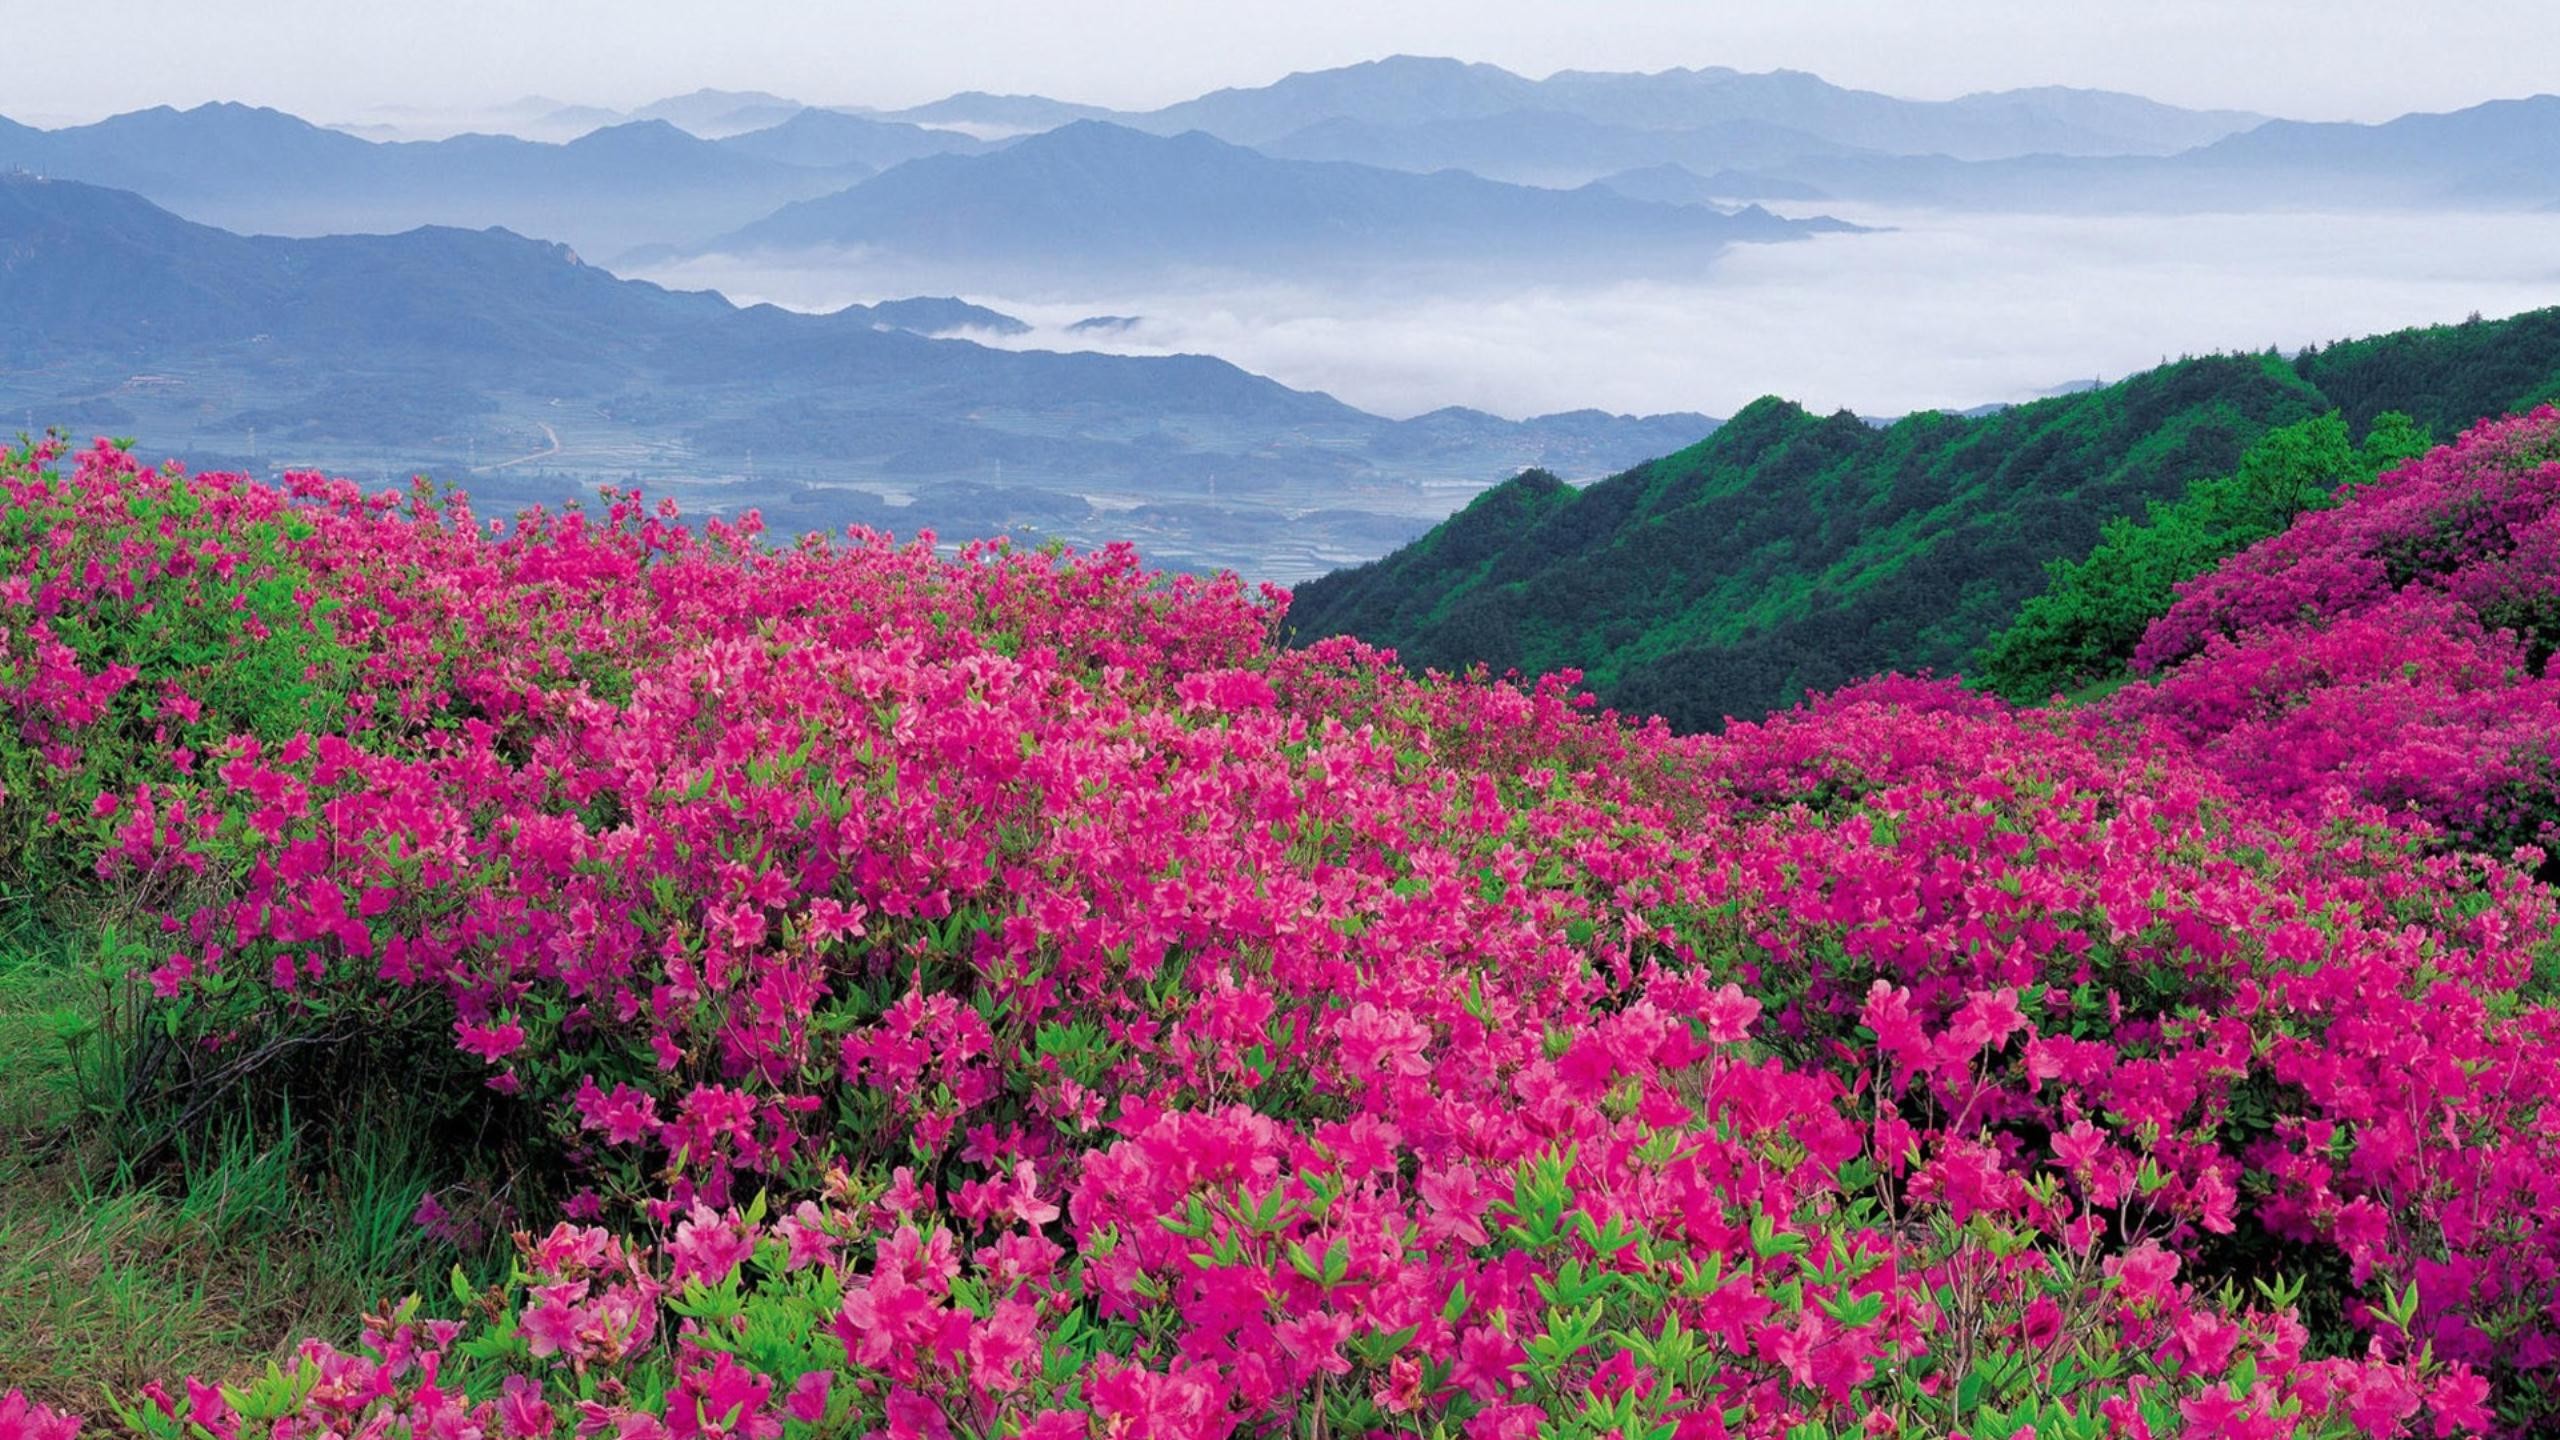 Обои на рабочий стол цветущая. Рододендрон Тибет. Казанлык Долина роз. Рододендрон в горах Монти-Сибиллини.